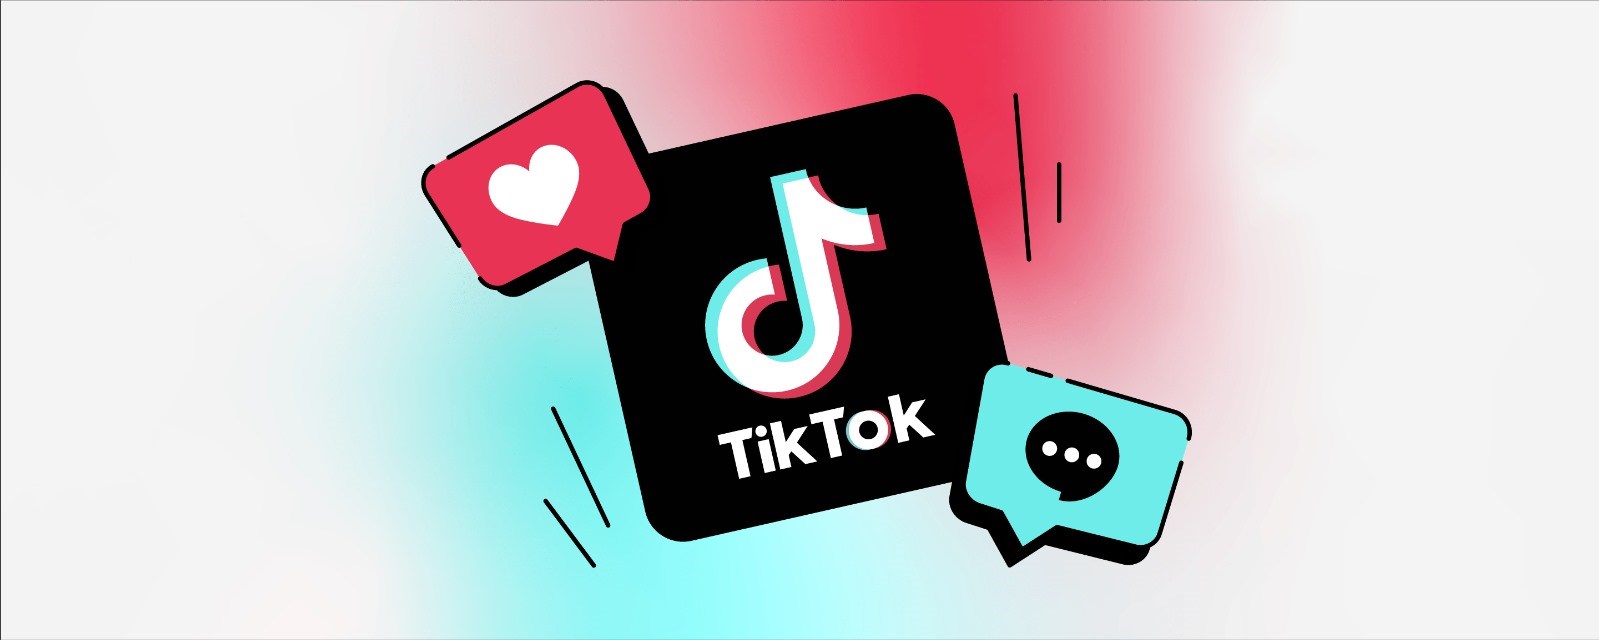 TikTok Studio: İçerik oluşturucularının yeni hesap yönetim aracı